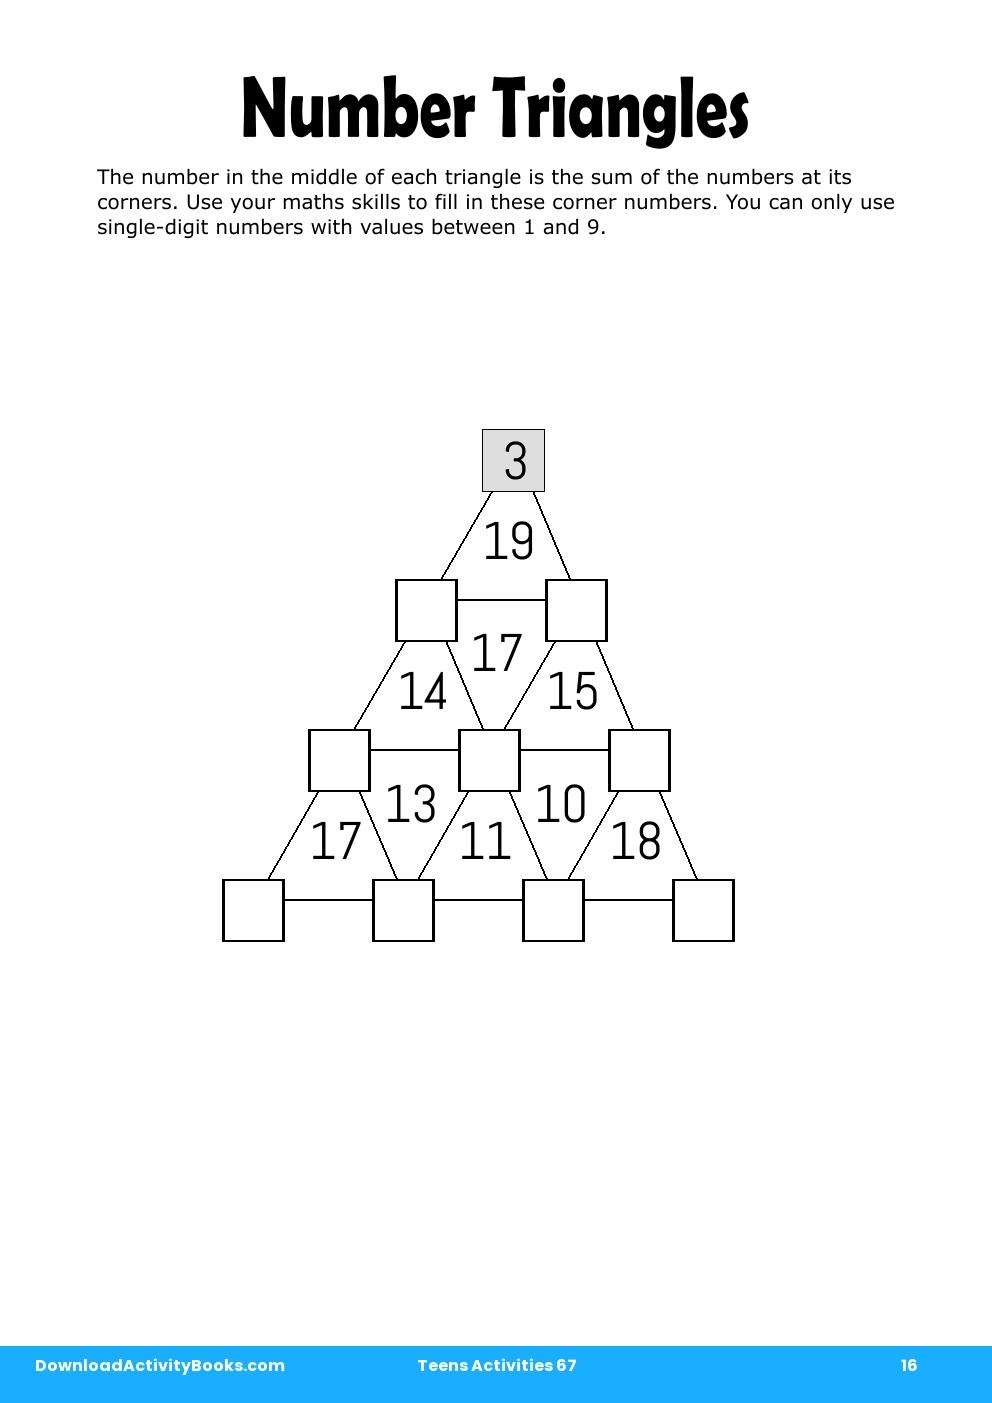 Number Triangles in Teens Activities 67